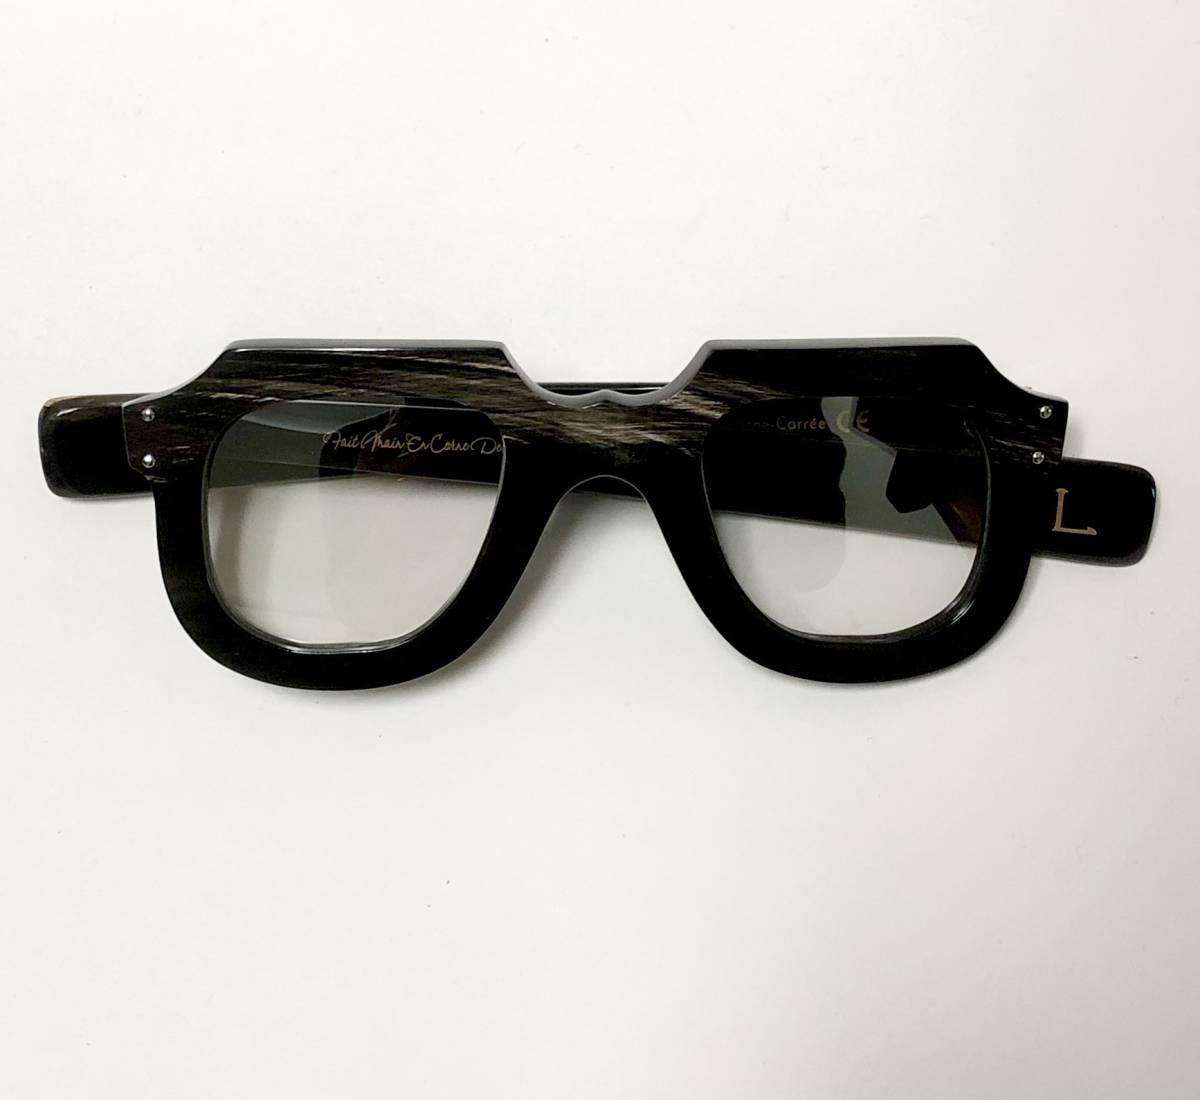 Gargoyle eyeglasses